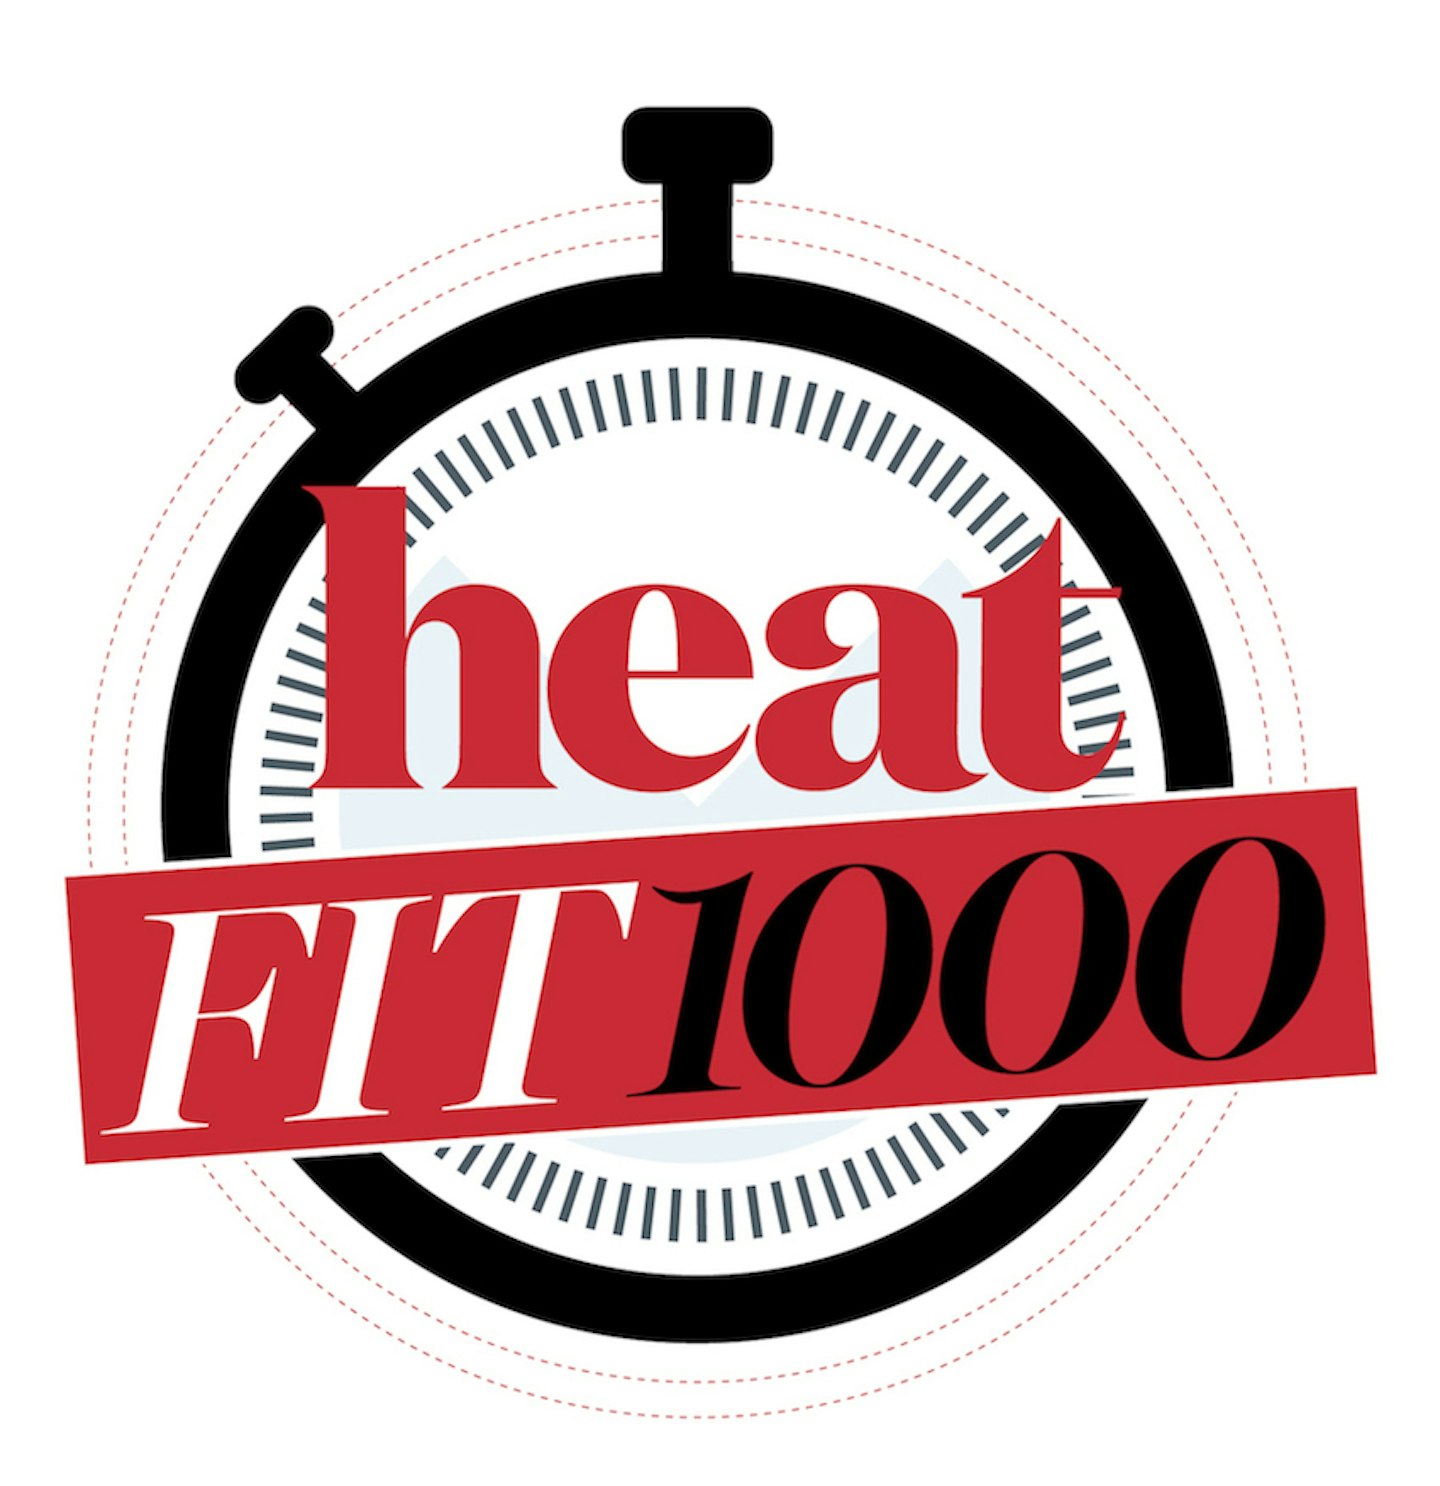 heatfit1000